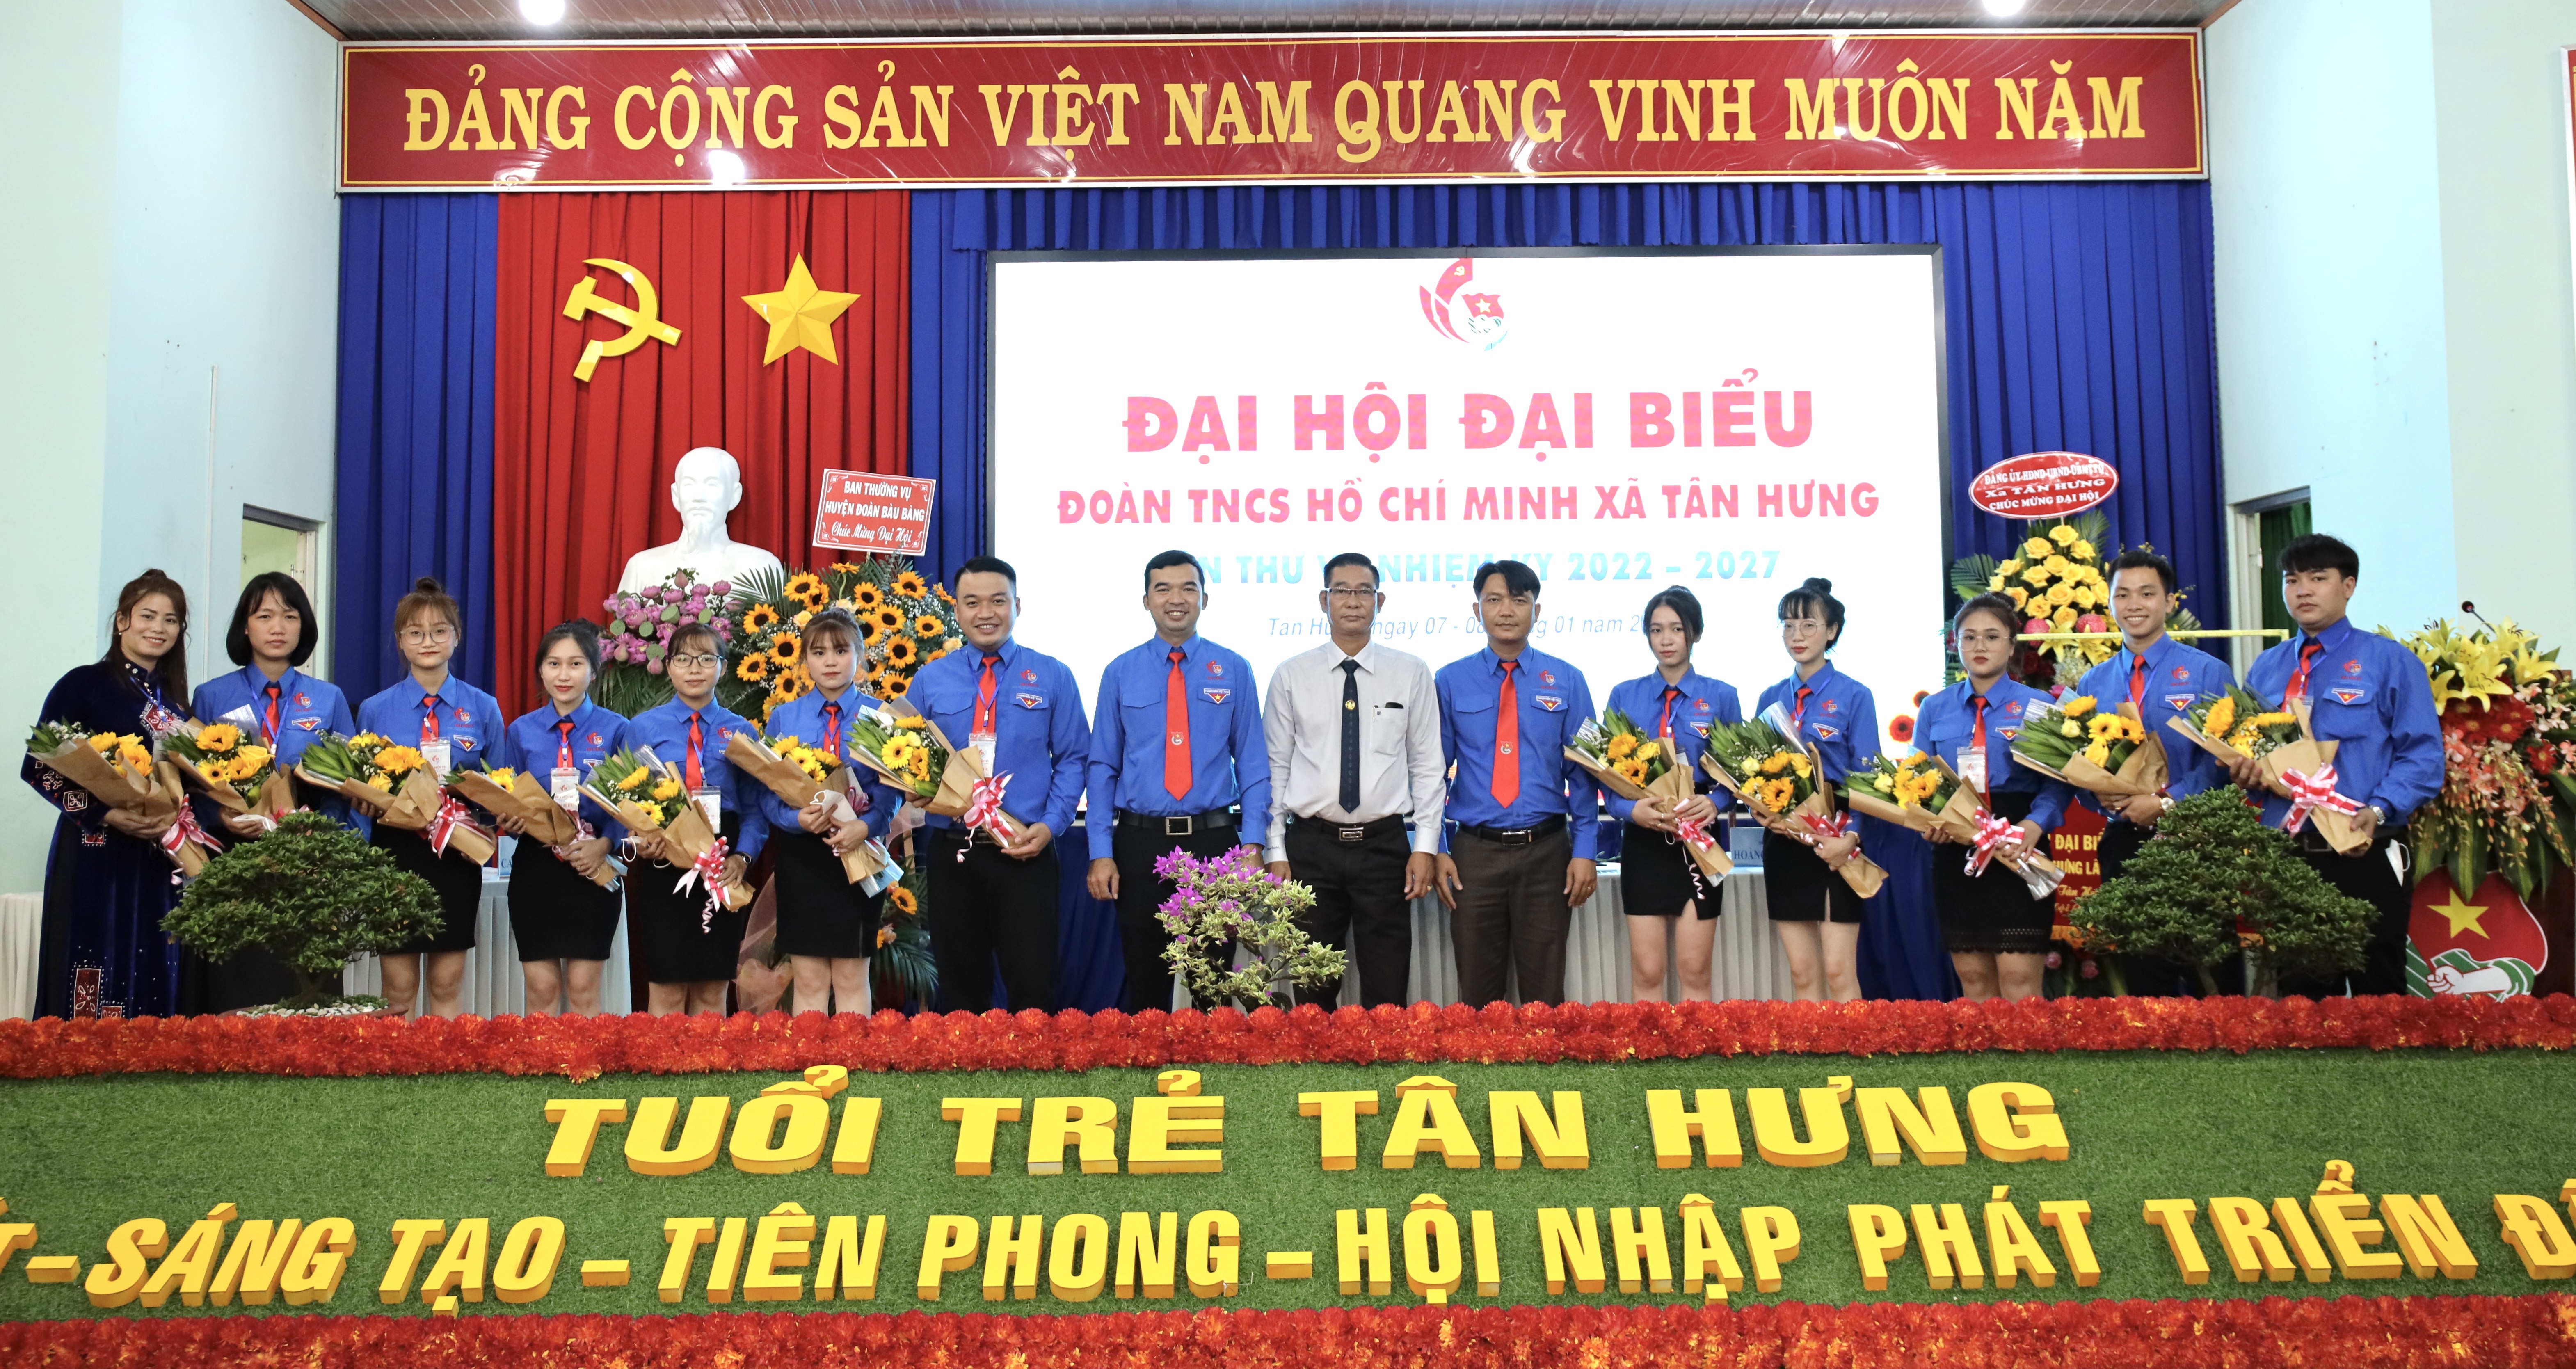 Đại hội Đại biểu Đoàn TNCS Hồ Chí Minh xã Tân Hưng lần thứ VI, nhiệm kỳ 2022 -2027 thành công tốt đẹp